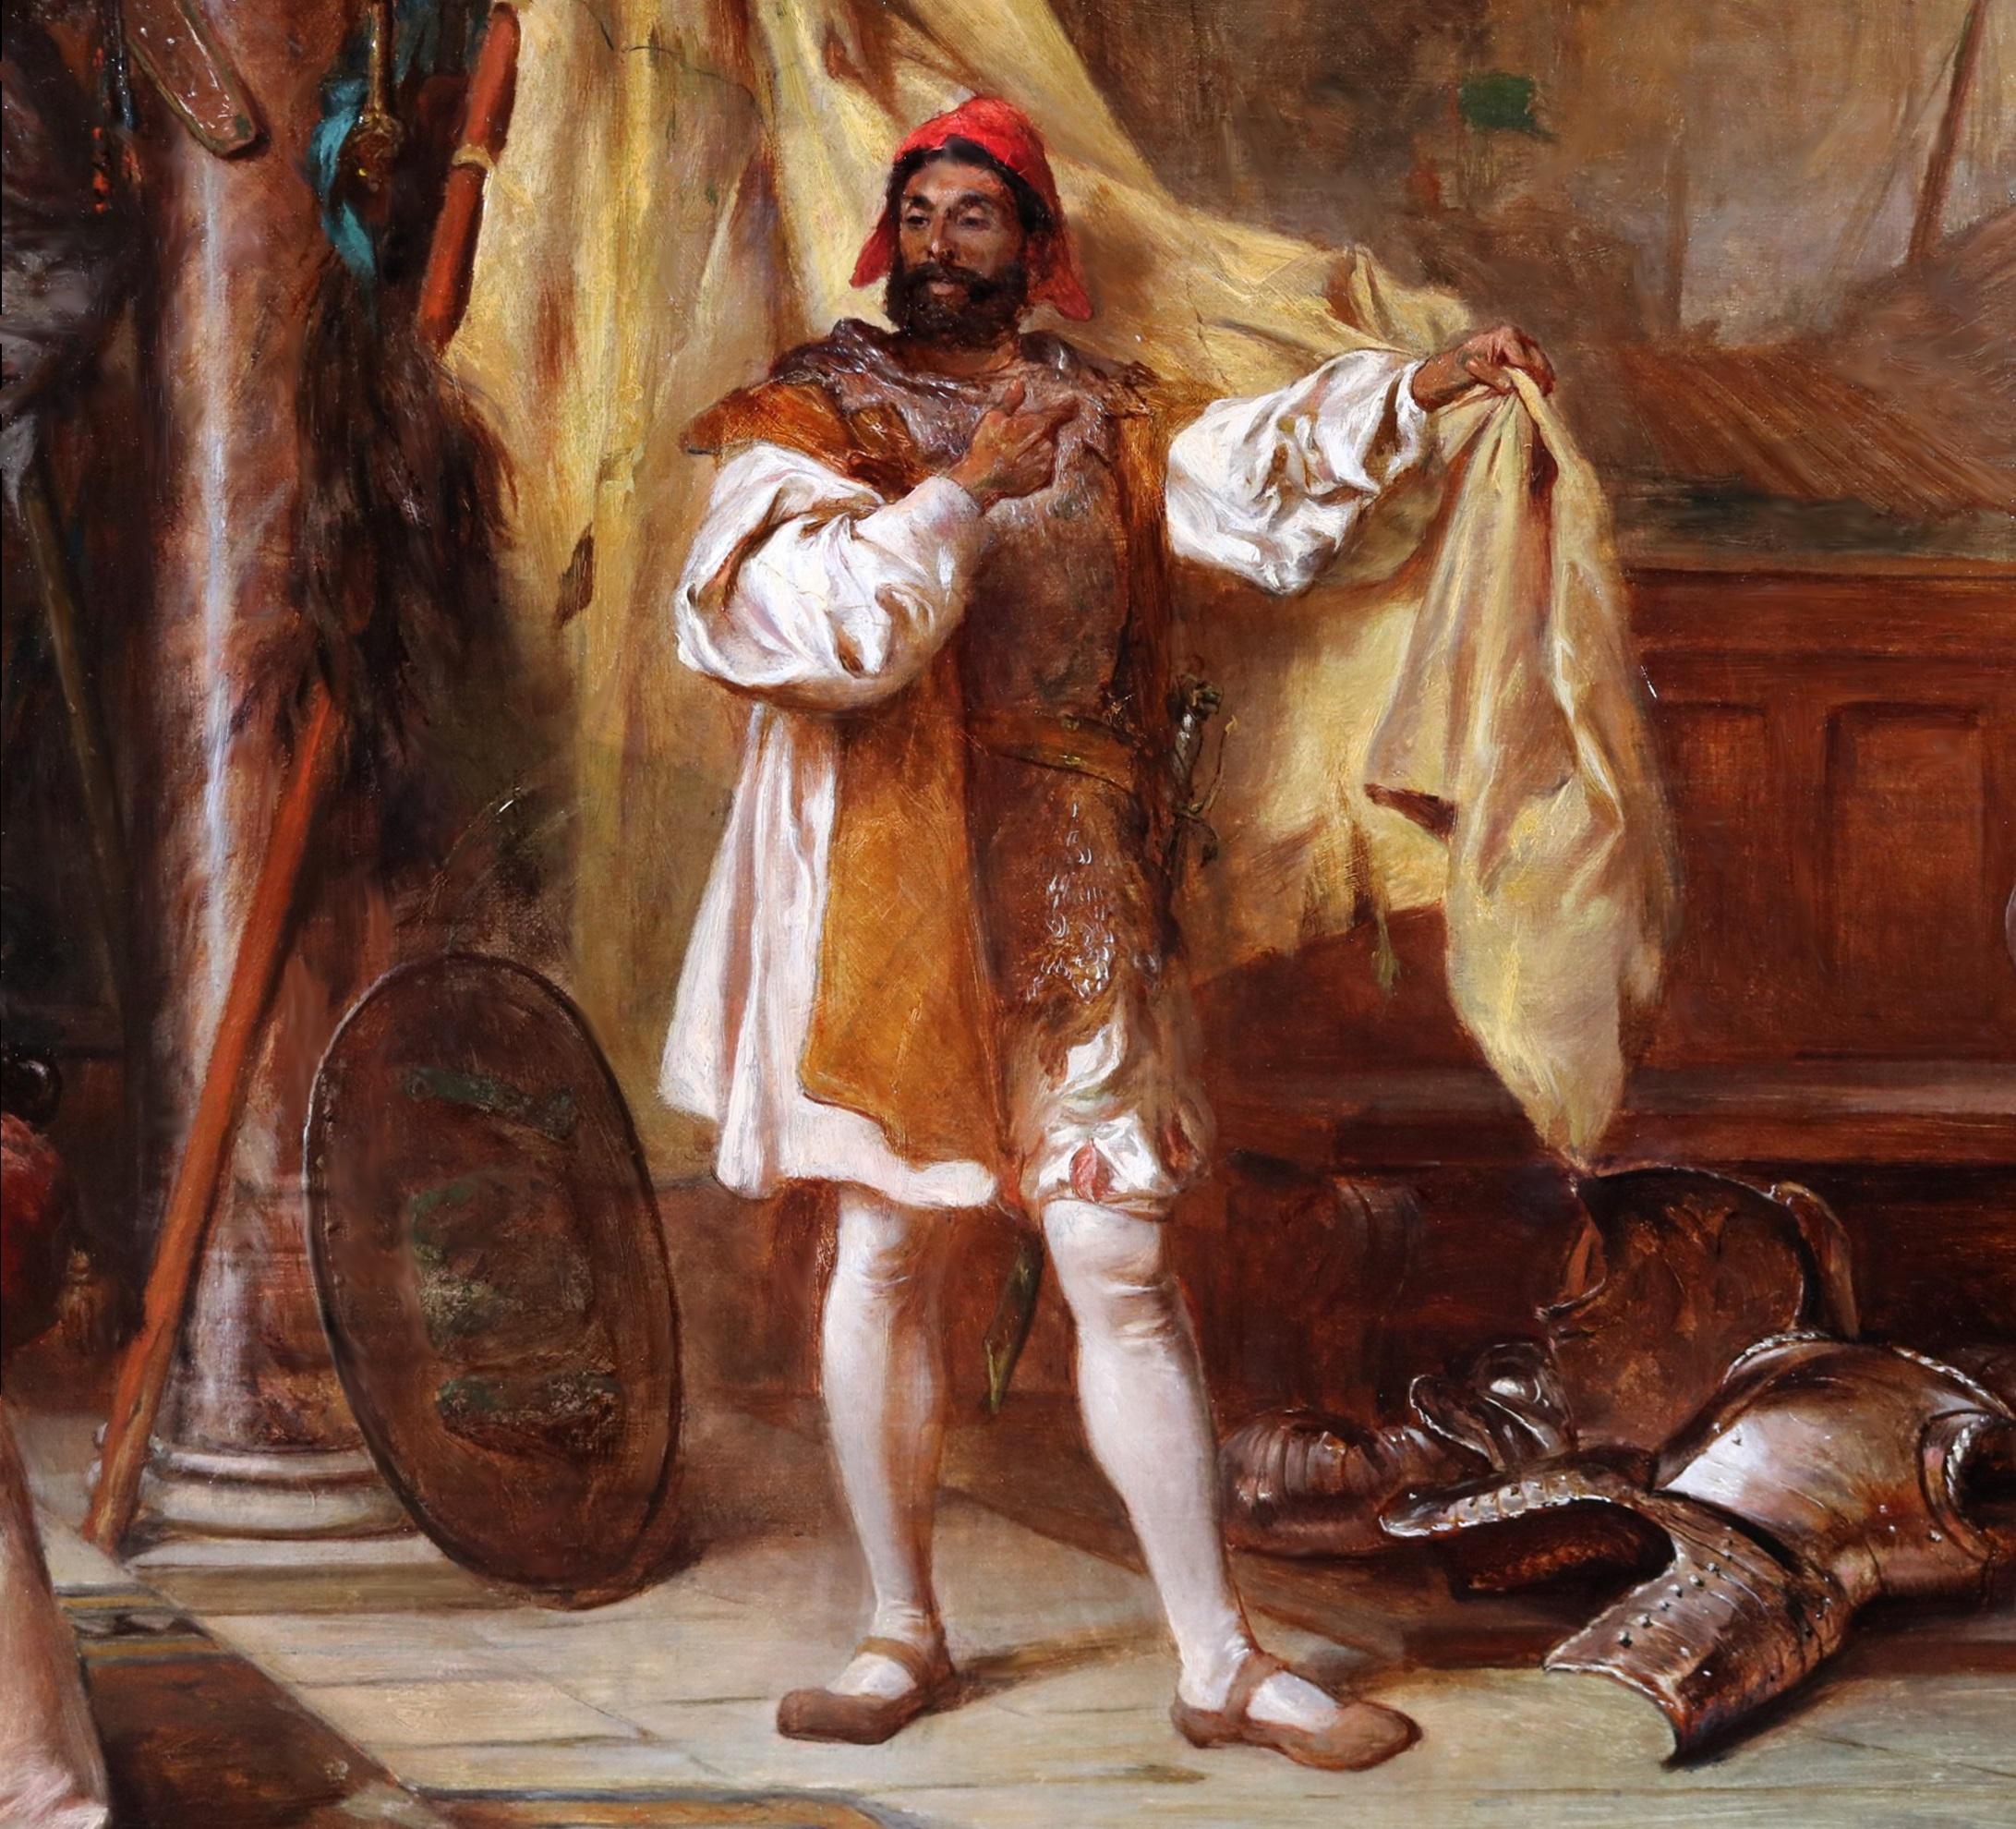 'Othello racontant ses aventures à Desdémone et Brabantio' par Robert Alexander Hillingford (1828-1904). 

Le tableau, qui représente le général vénitien de Shakespeare, son amante Desdémone et le père sénateur de celle-ci, est signé par l'artiste